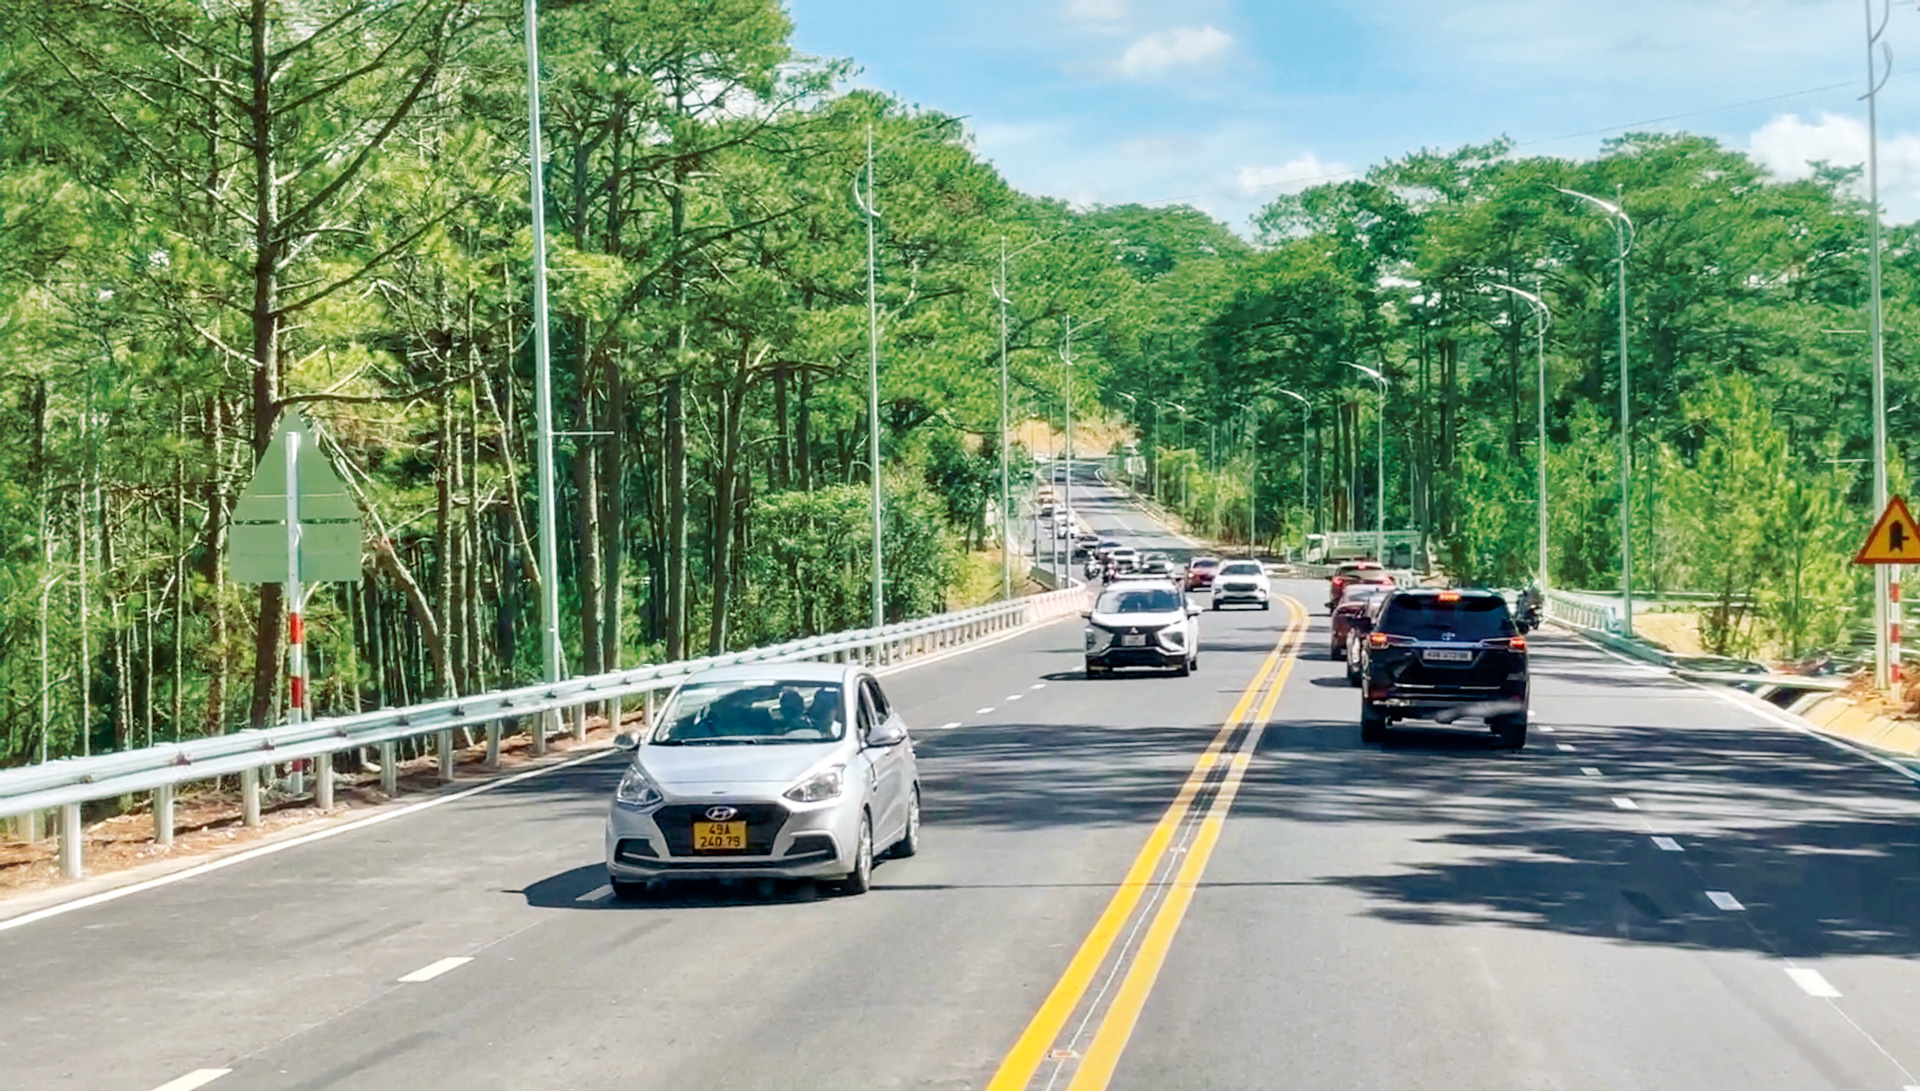 Theo Quy hoạch hệ thống du lịch thời kỳ 2021-2030, tầm nhìn đến năm 2045,
Lâm Đồng nằm trong định hướng phát triển và liên kết phát triển du lịch “Con đường xanh Tây Nguyên”